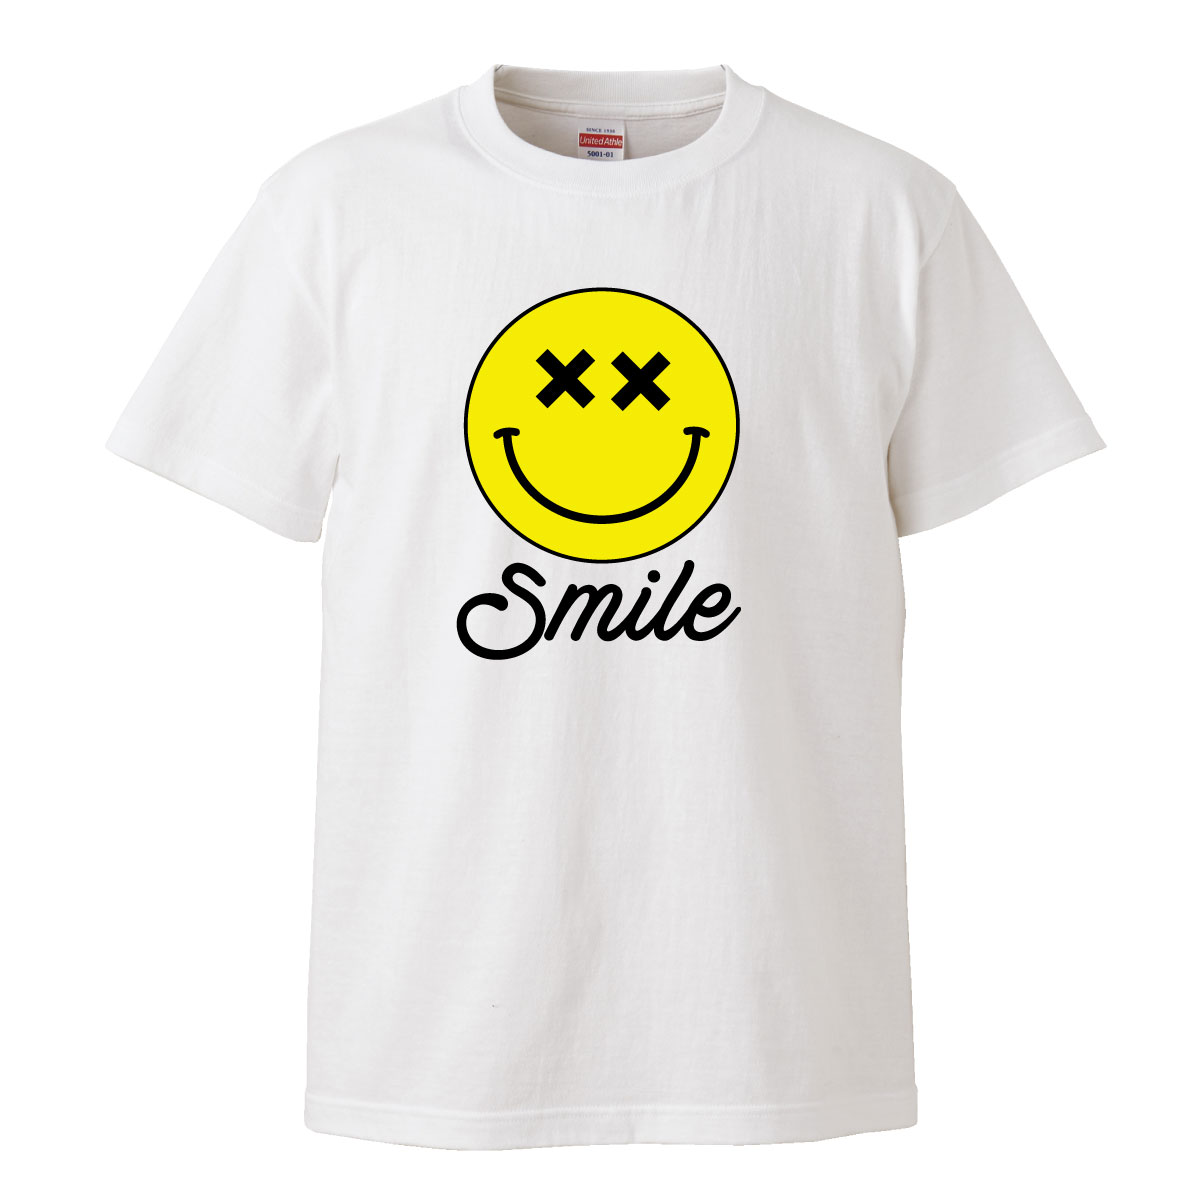 楽天市場 ニコちゃん にこちゃん マーク スマイル 笑顔 Smile イラスト ロゴ Logo デザイン Tシャツ T Shirt ティーシャツ 半袖 大きいサイズあり Big Size ビックサイズ Tron 楽天市場店